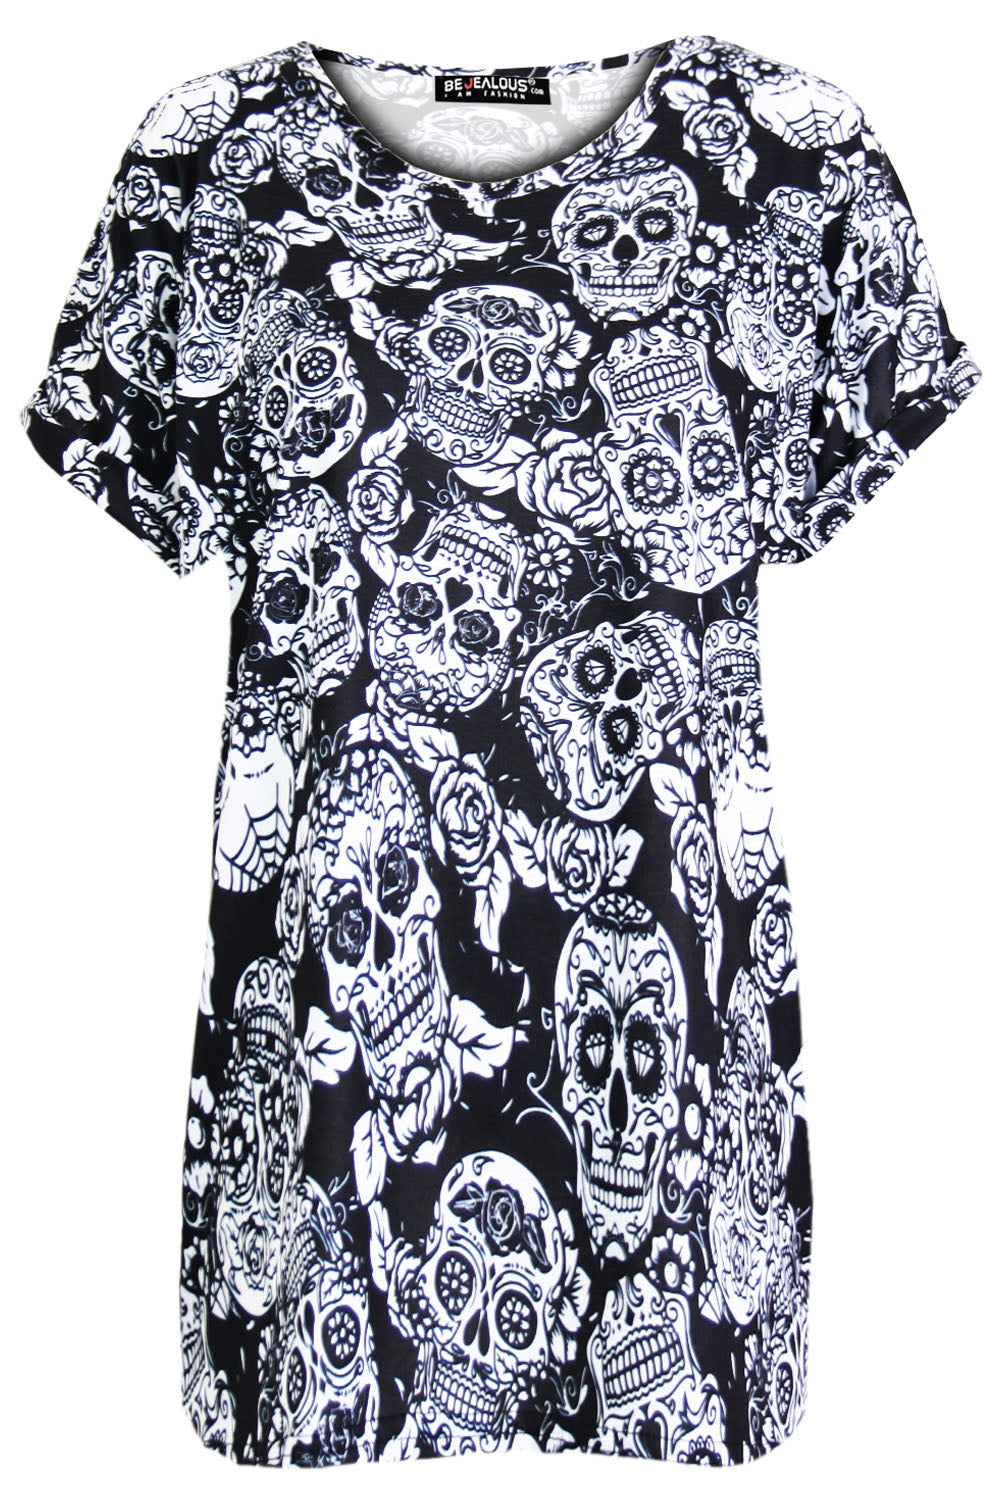 Short Sleeve Floral Skull Print Tshirt